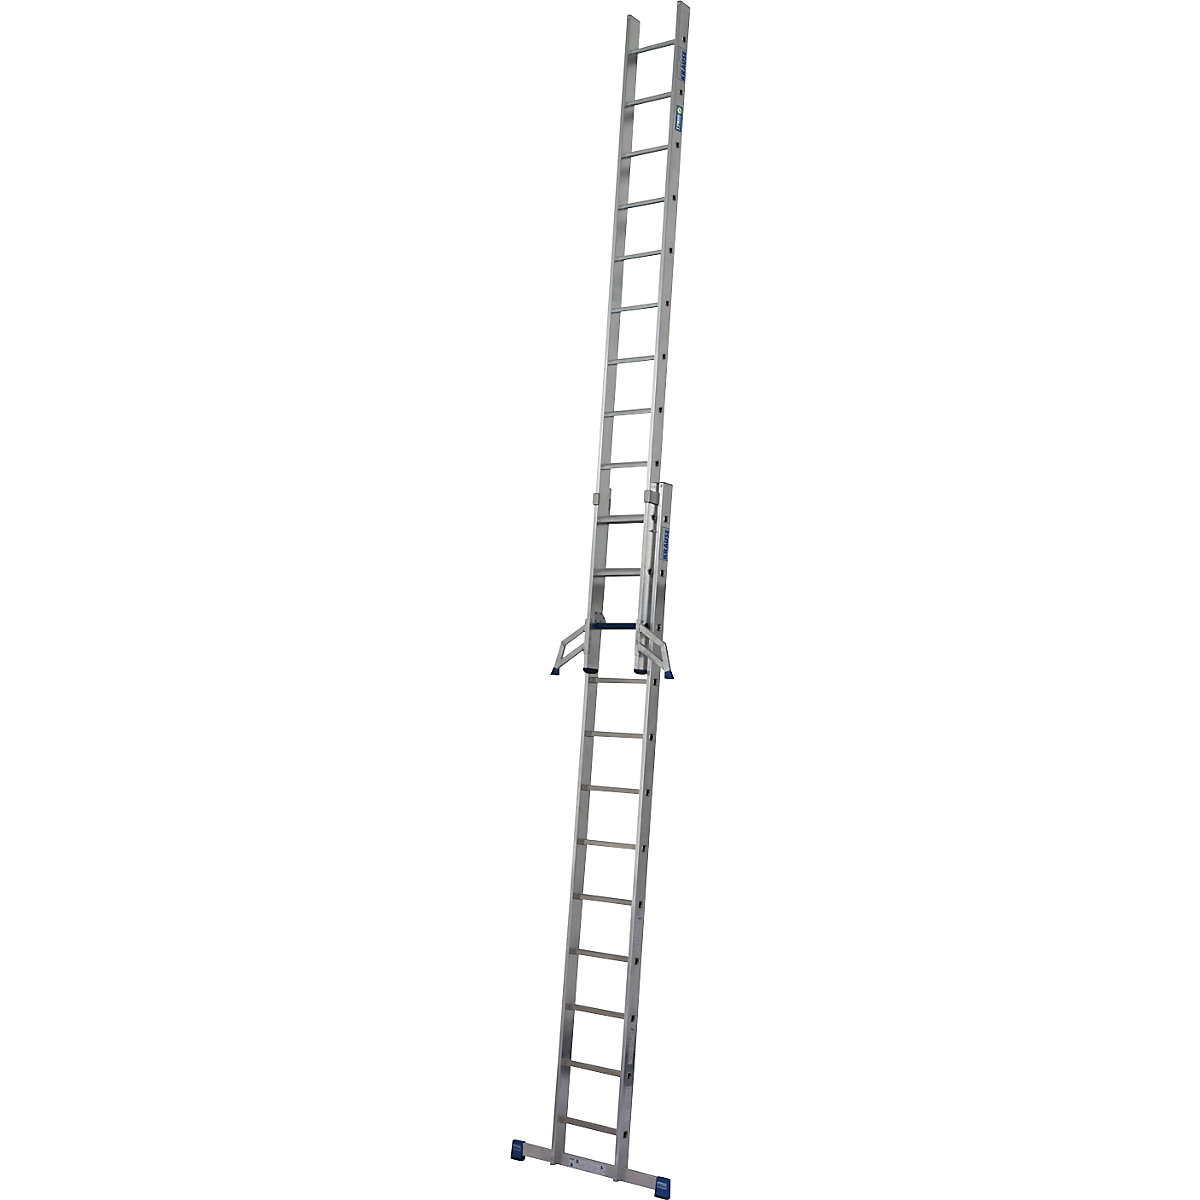 Profesionálny výsuvný rebrík STABILO + S – KRAUSE, kombinácia stupňov a priečok, 2 x 12 stupňov/priečok-14